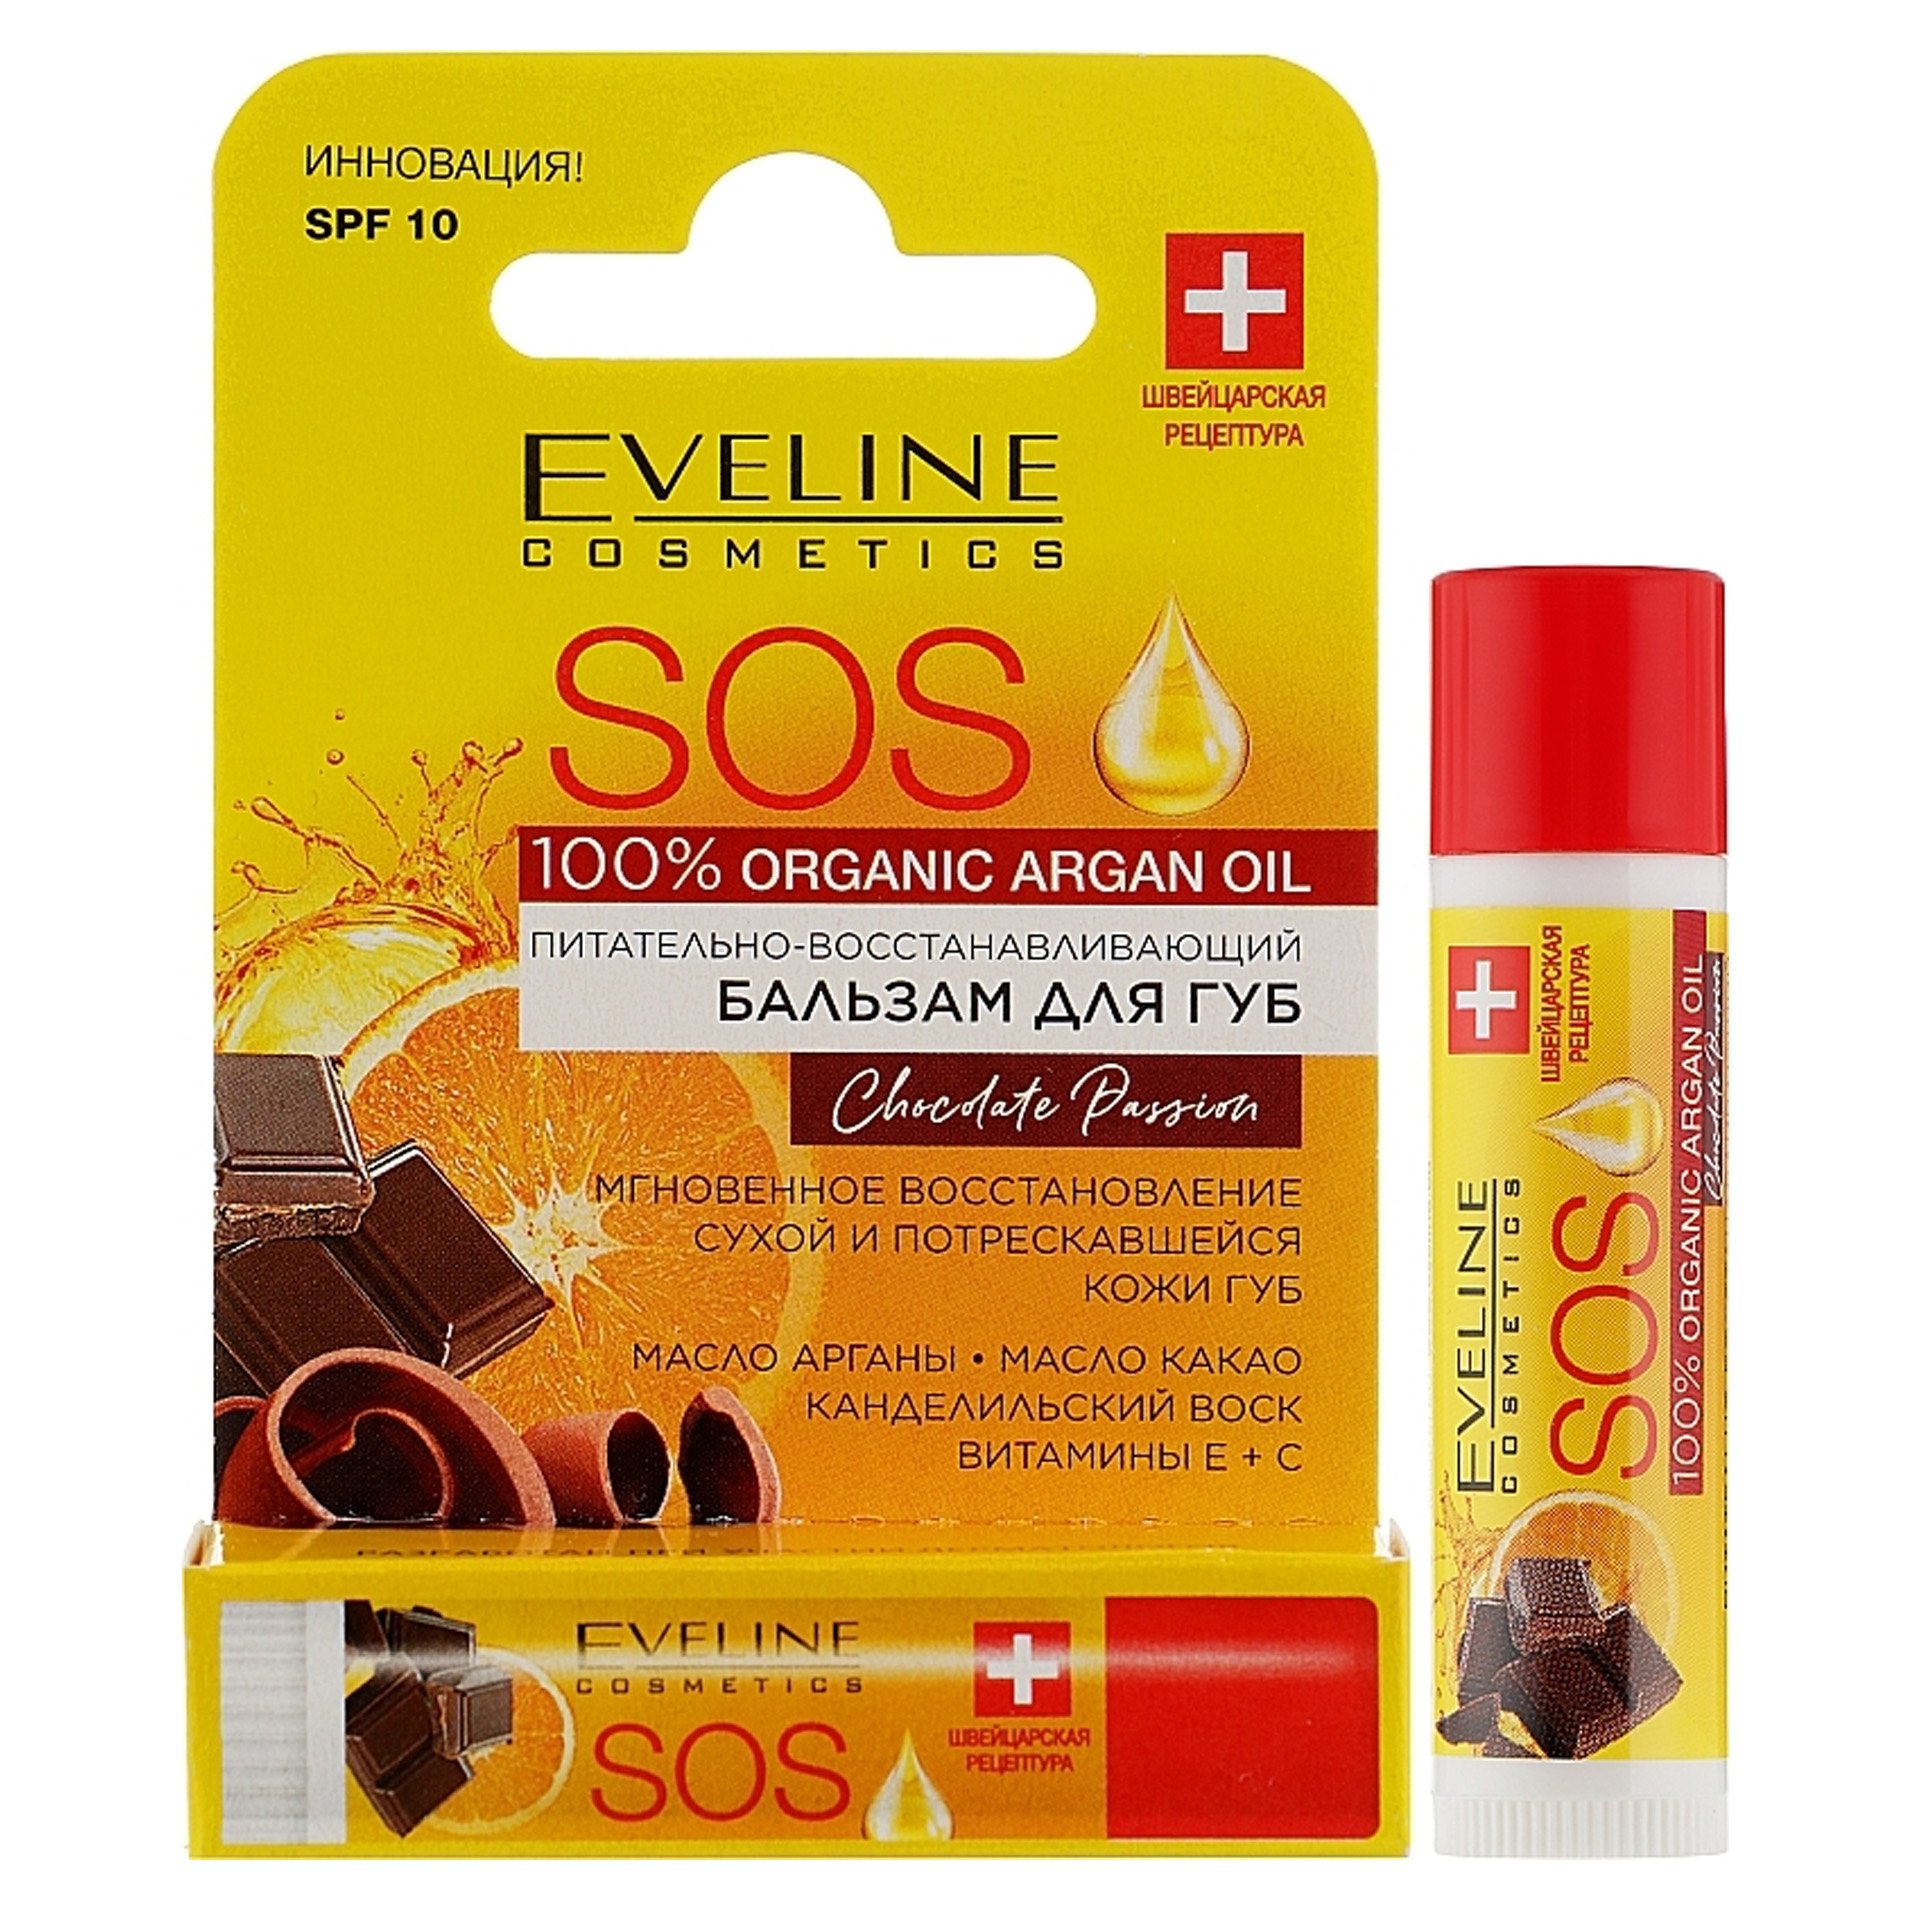 Бальзам для губ Eveline питательно-восстанавливающий SOS 100% Organic Argan Oil, Chocolate Passion, SPF 10, 4,5 г - фото 1